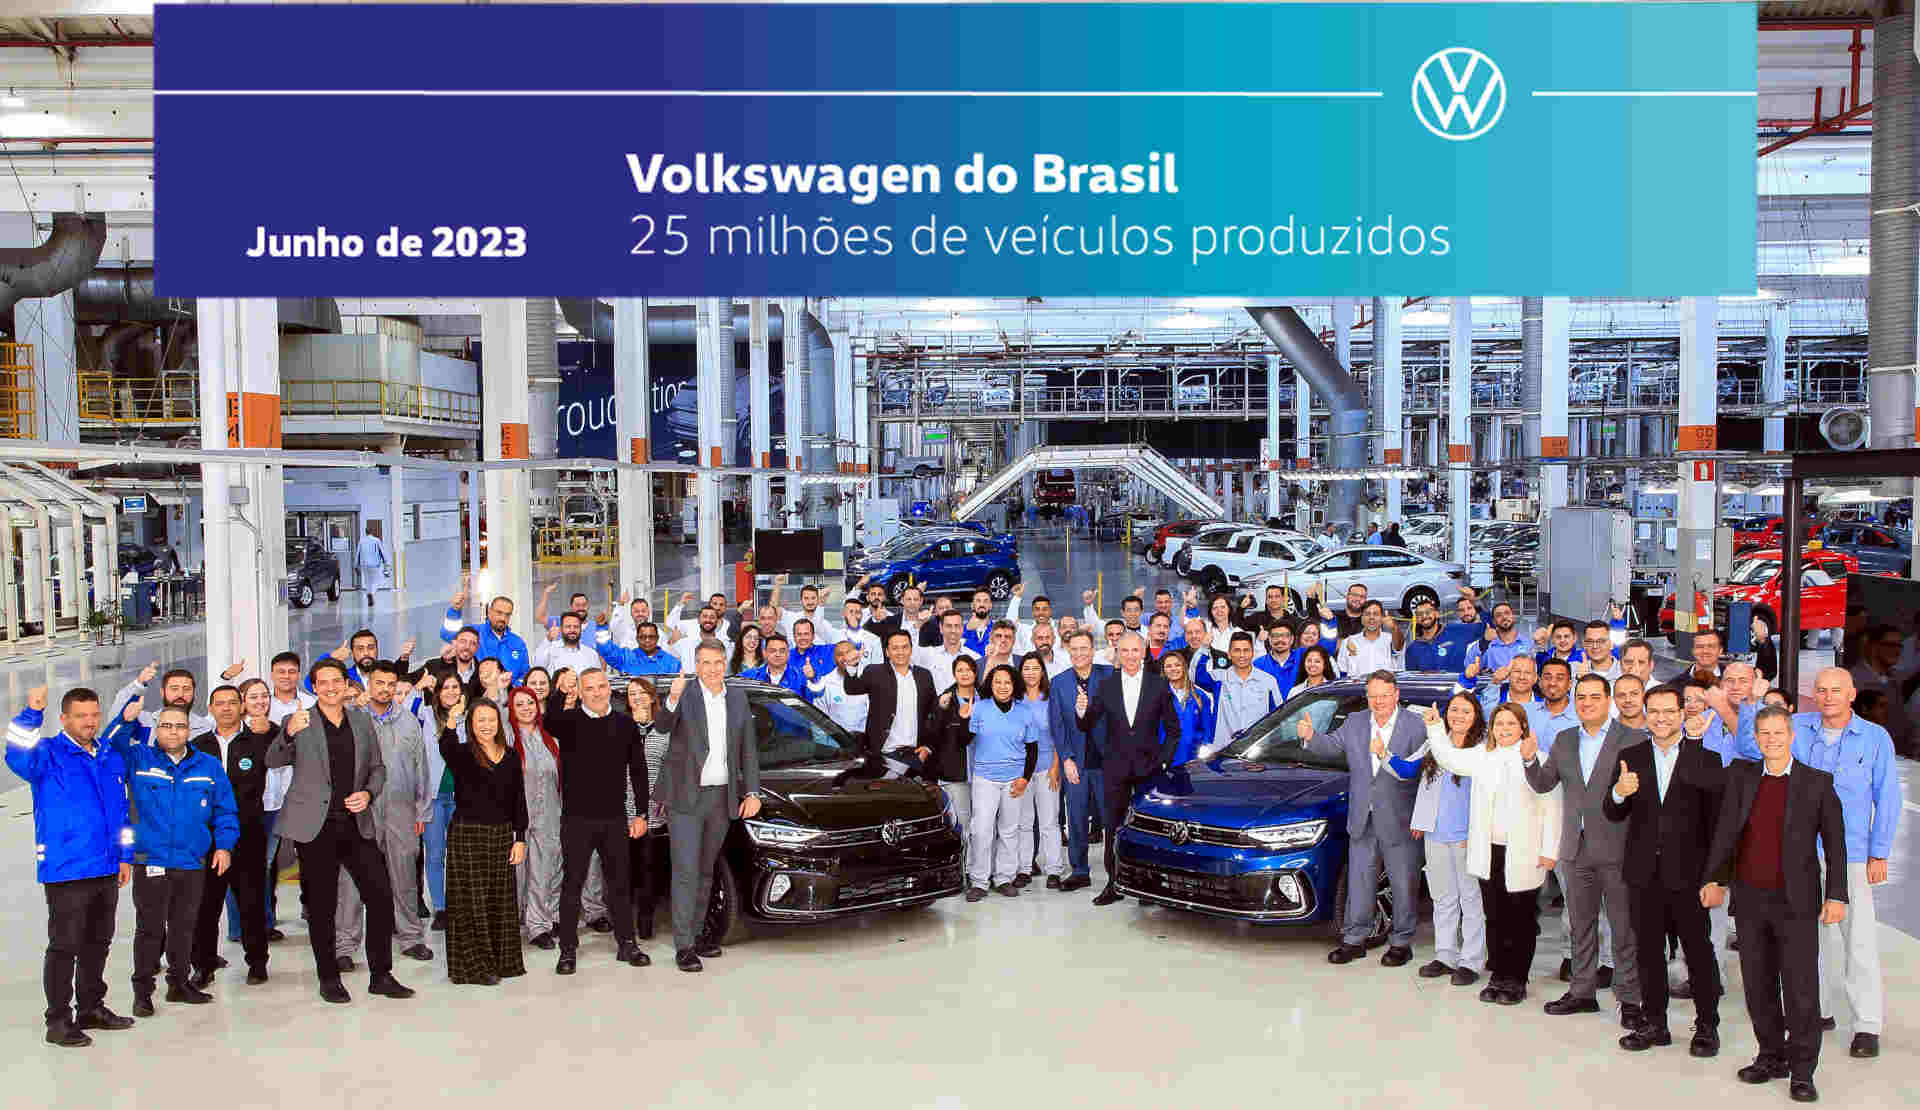 Foto de capa da cerimônia de celebração dos 25 milhões de veículos fabricados pela Volkswagen no Brasil